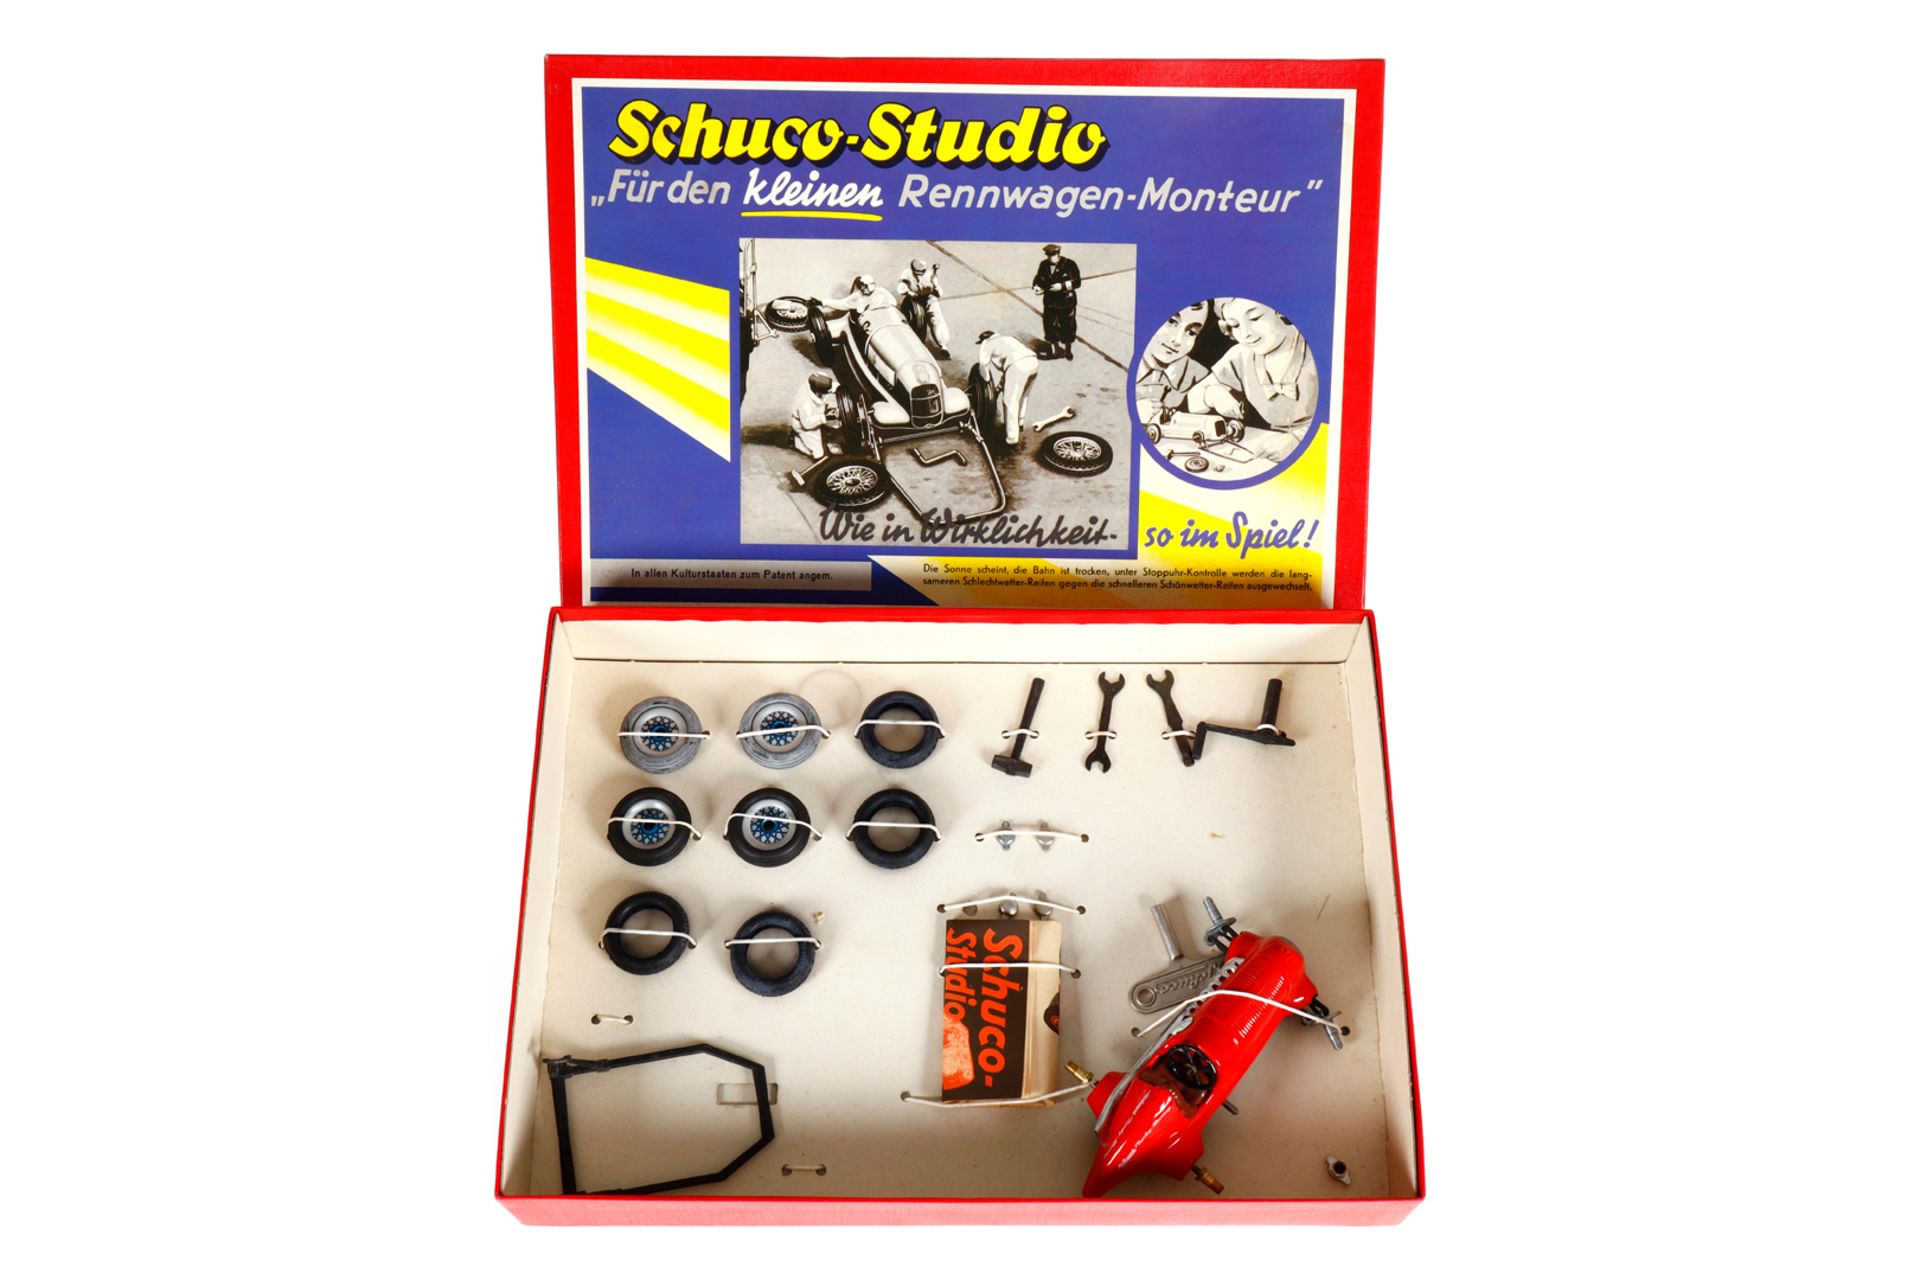 SCHUCO-Studio Set ”Für den kleinen Rennwagen-Monteur” 1055, weitgehend vollständig, mit Prospekt und